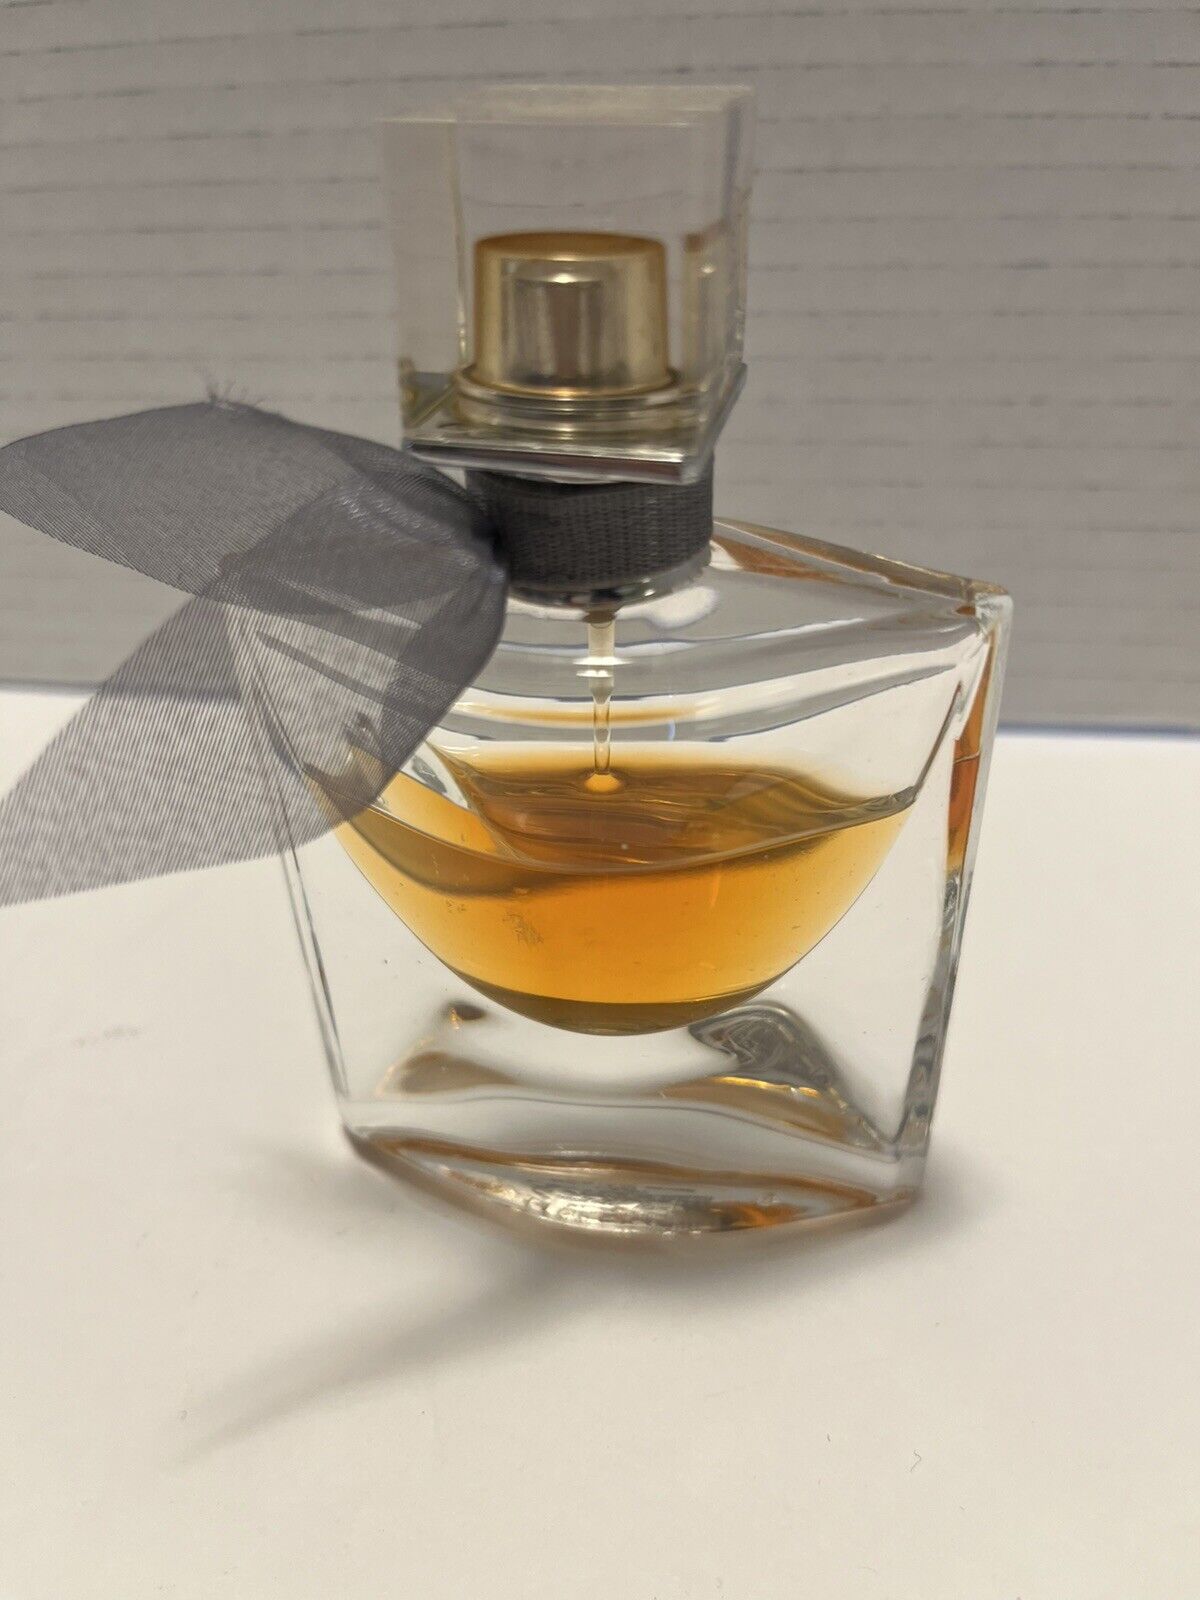 Lancome La Vie Est Belle Eau de Parfum. 1 fl oz. Half Full. Made in France. 